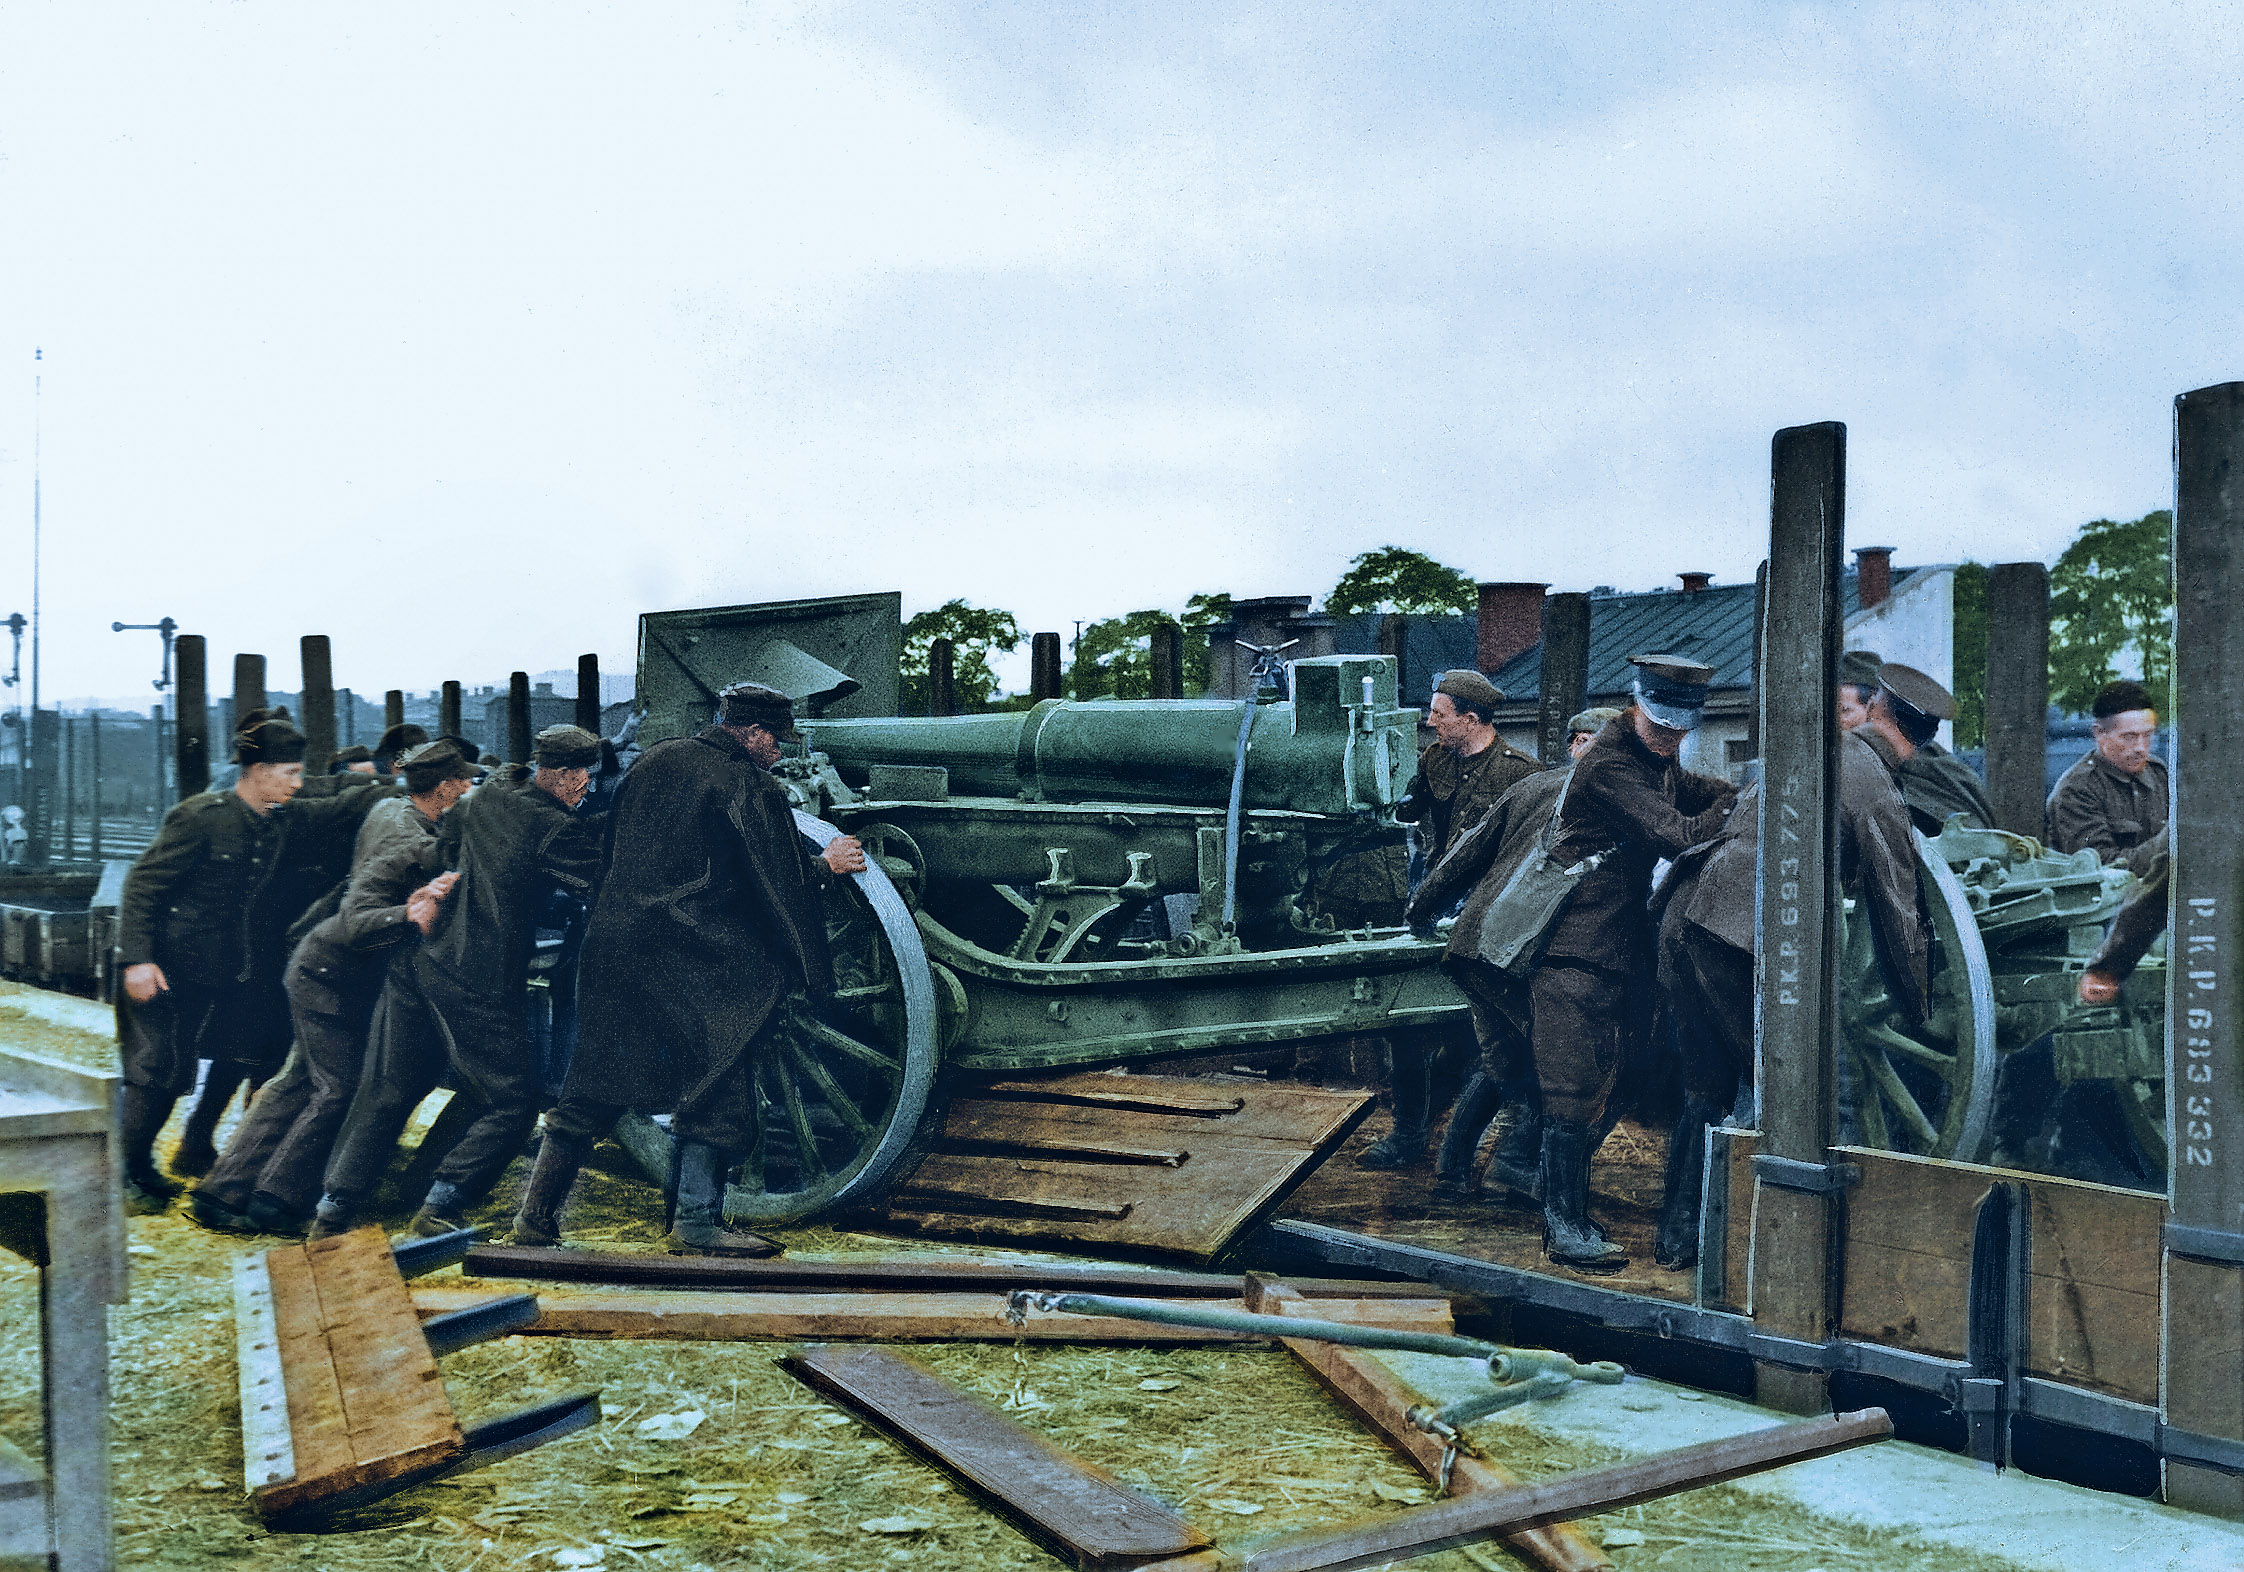 Jeńcy polscy ładują działo artyleryjskie na wagon kolejowy - 1939 r. / Polish prisoners of war loading an artillery gun on a railway wagon - 1939